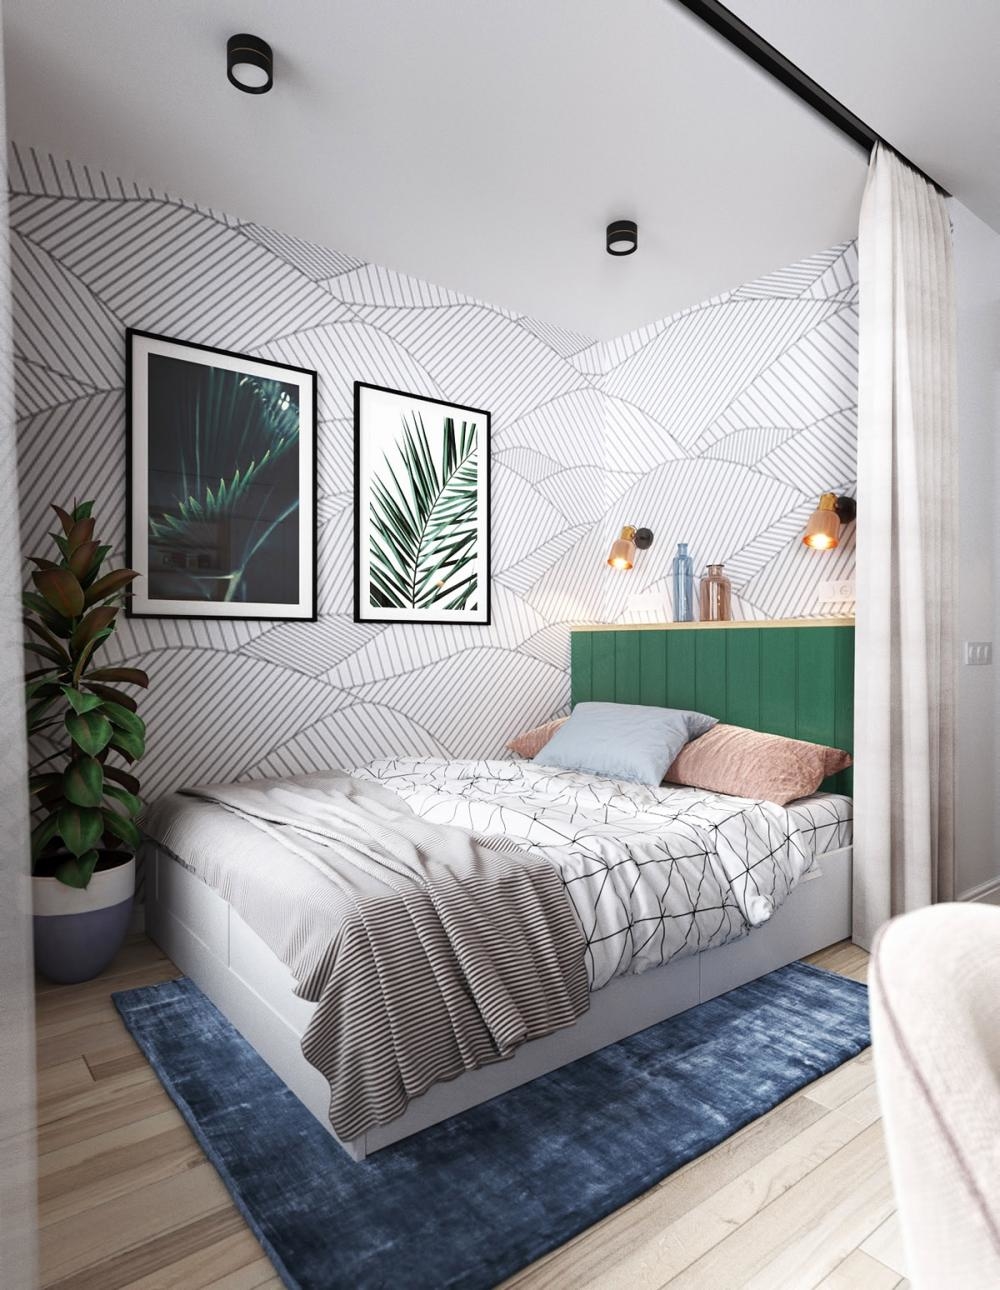 
Phòng ngủ với họa tiết dán tường nhẹ nhàng kết hợp cùng màu xanh của cây lá tạo nên một không gian riêng tư sống động. Khi cần không gian riêng tư gia chủ chỉ cần kéo tấm rèm qua là có ngay một góc nhỏ yên tĩnh, ấm áp rồi